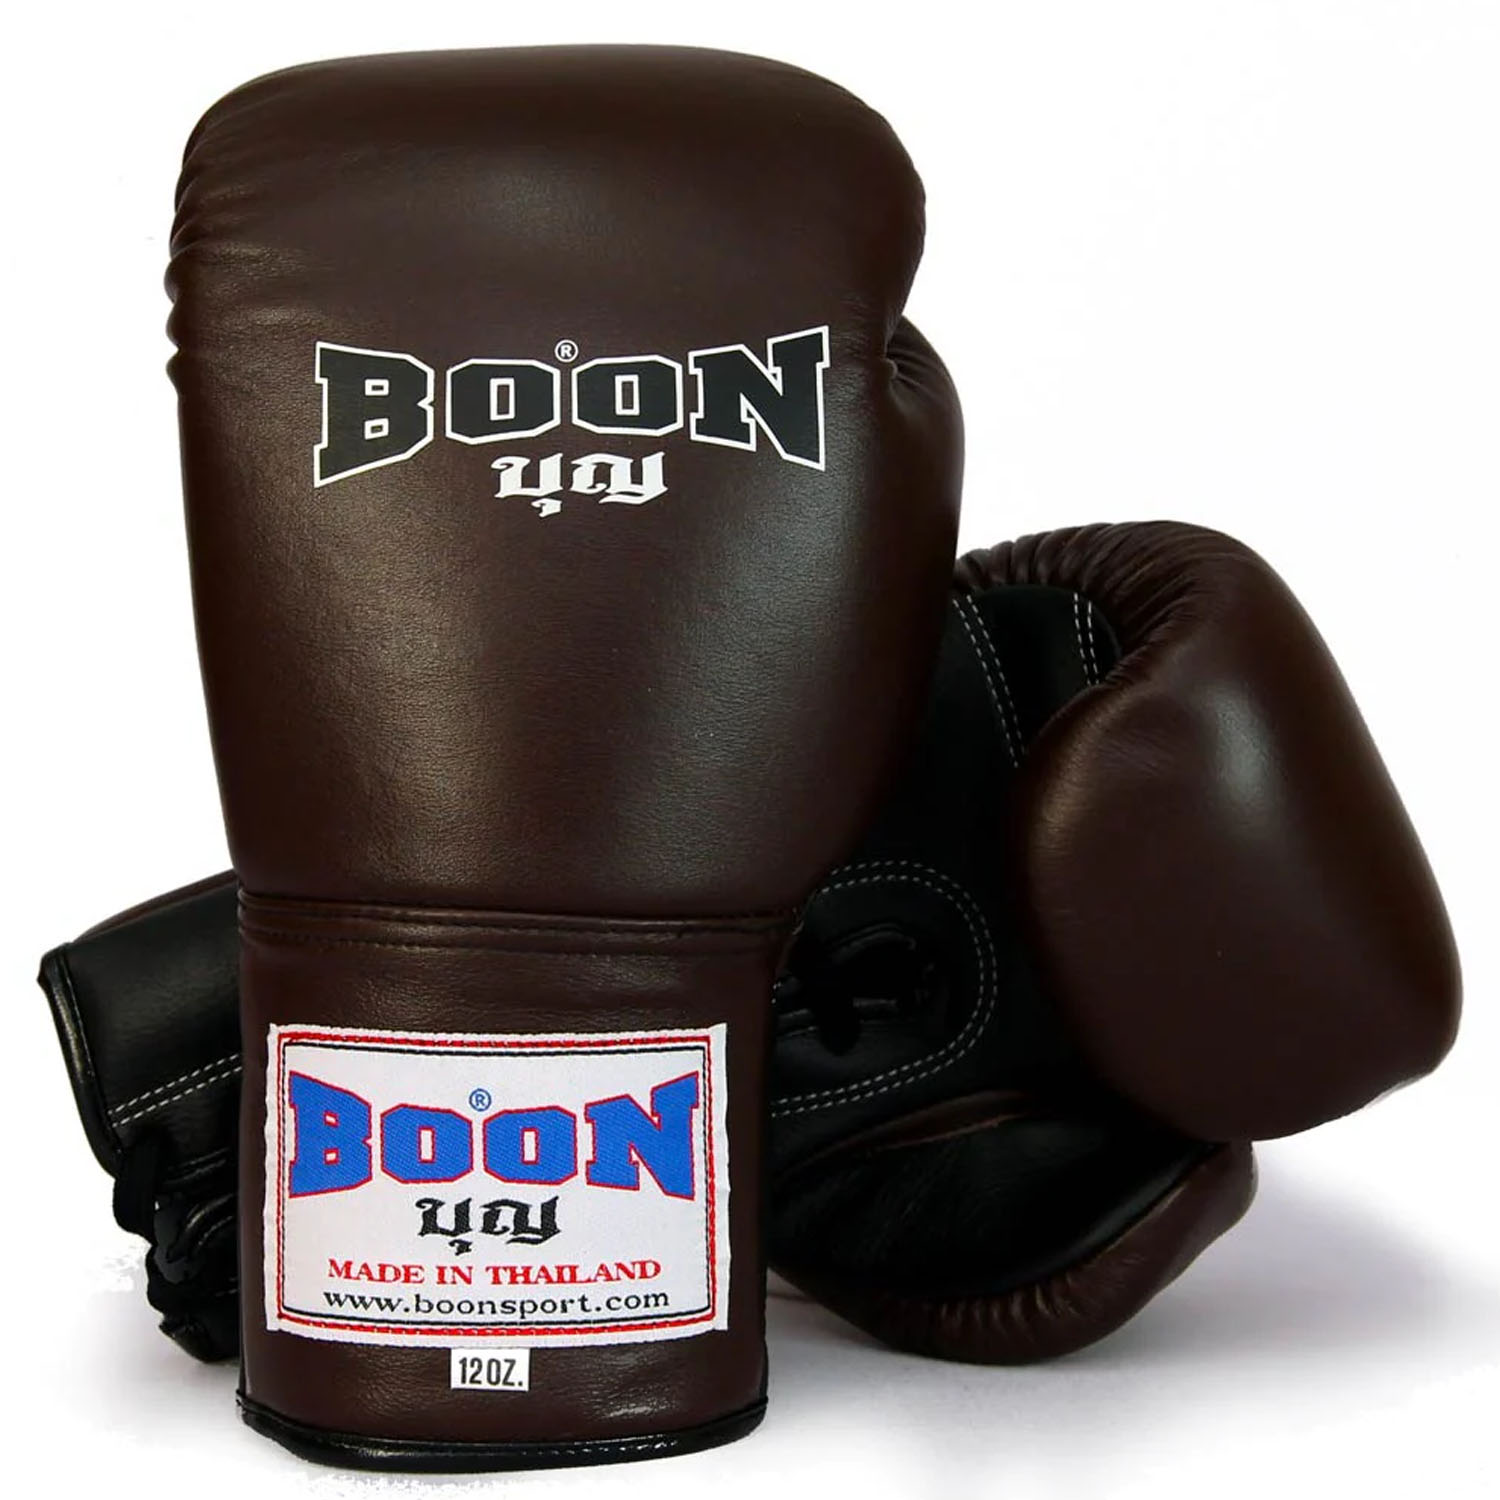 BOON Boxhandschuhe, BGLBR, Lace Up, braun-schwarz, 10 Oz